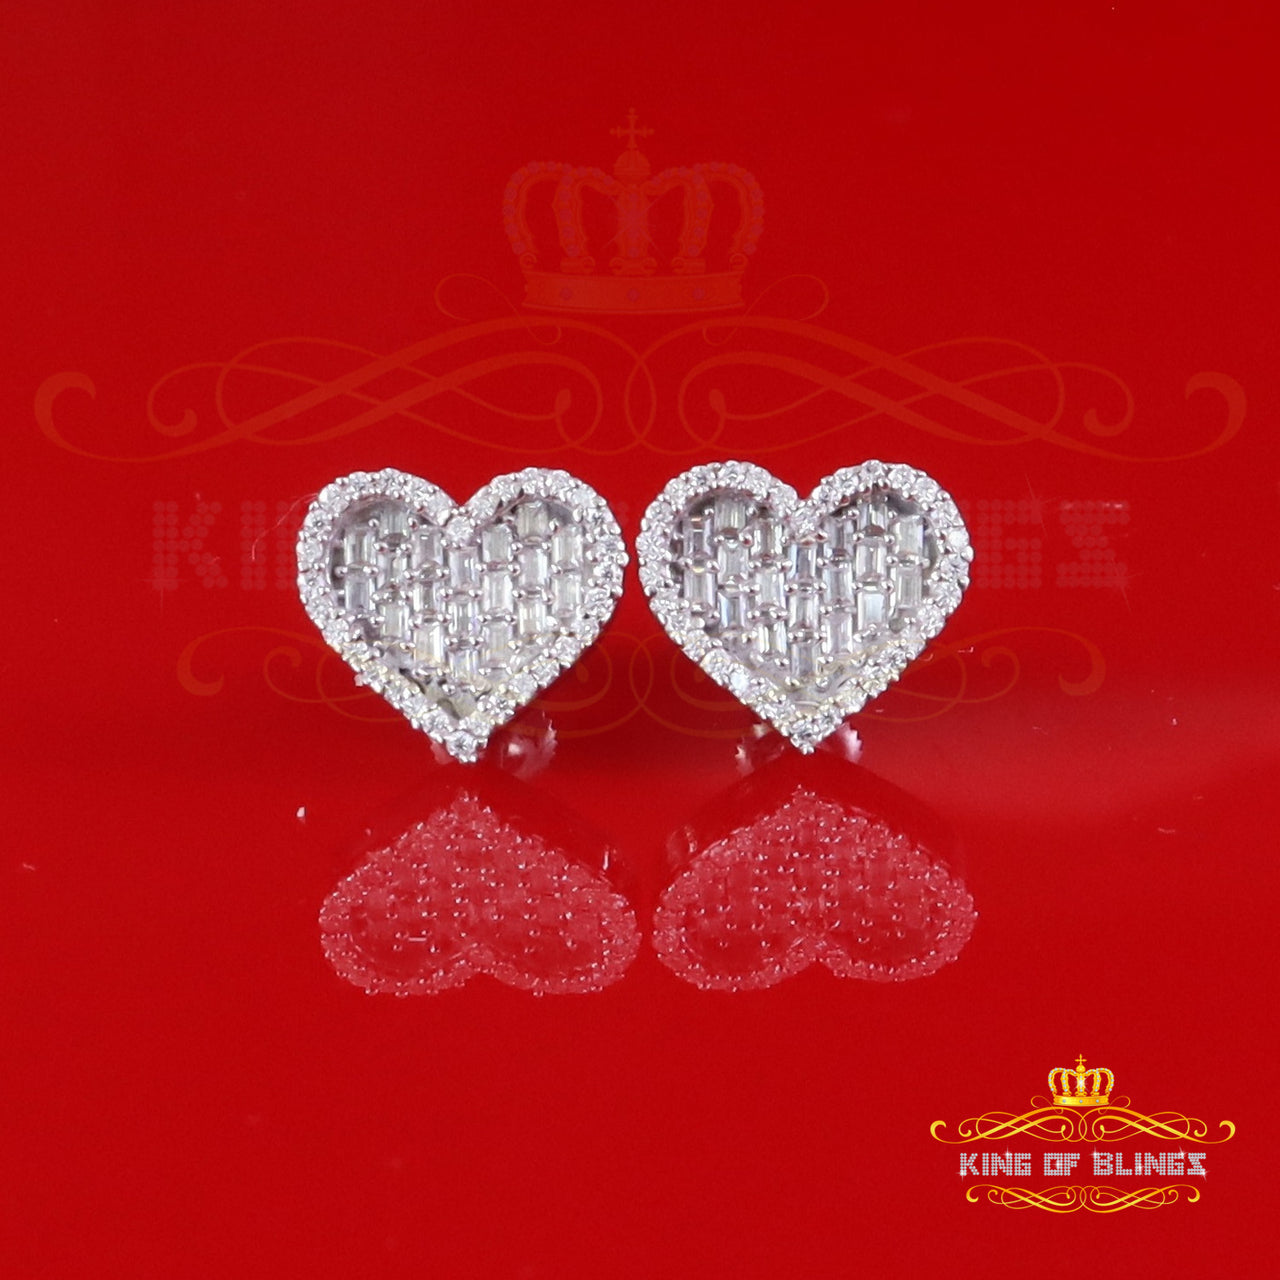 King of Bling's White Silver 1.00ct VVS 'D' Moissanite Baguette Heart Earring Men's/Womens King of Blings